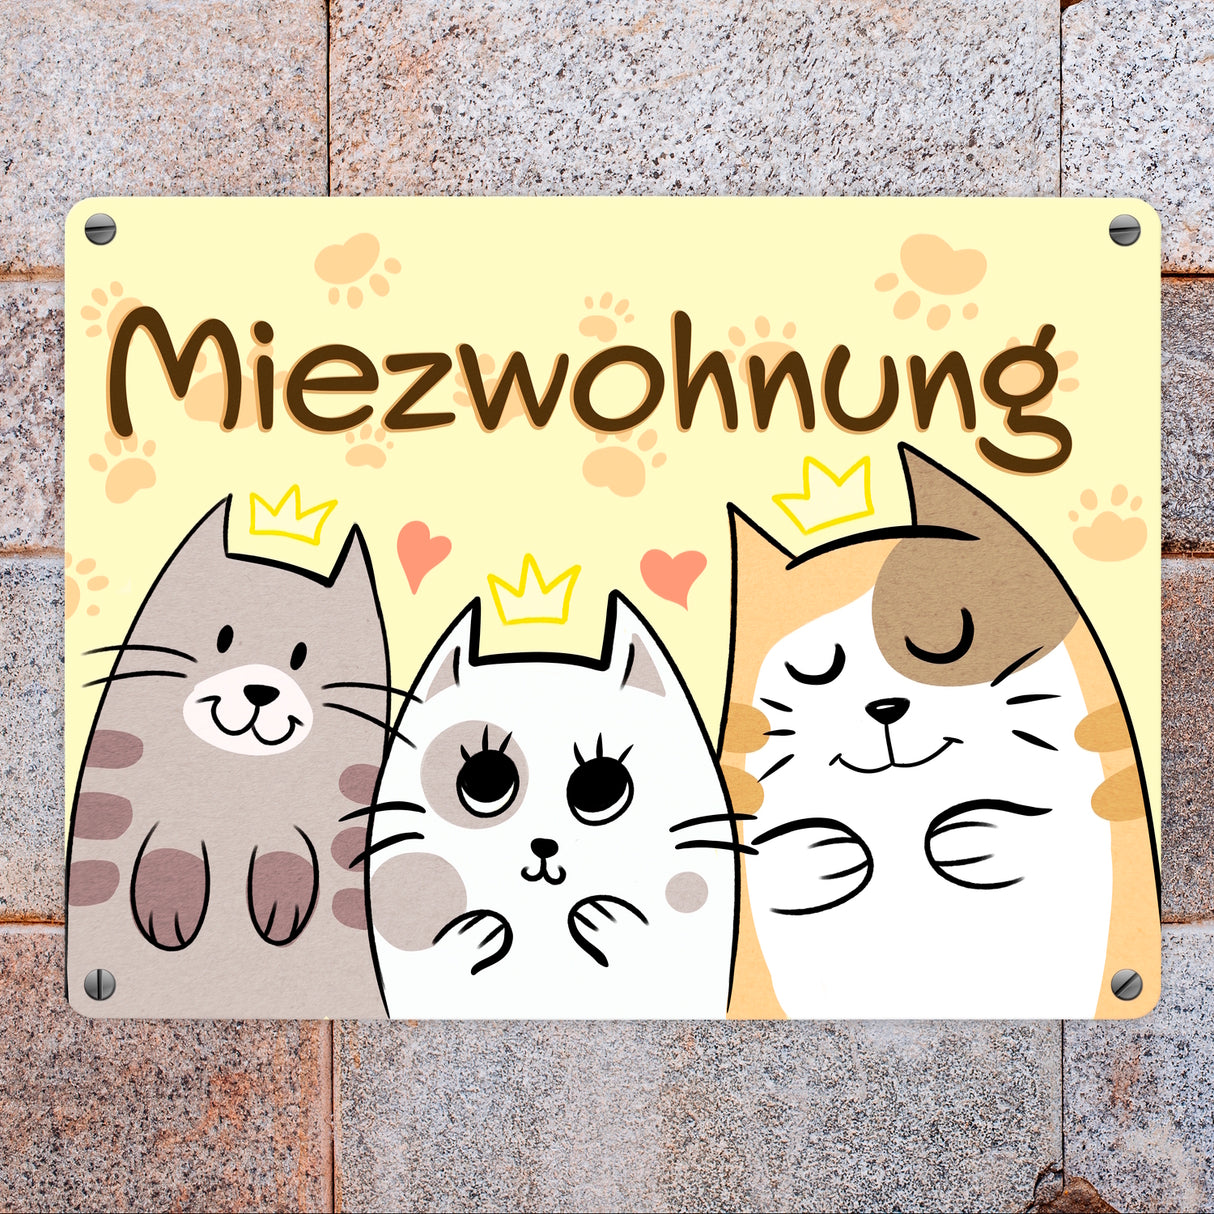 Miezwohnung Metallschild mit drei süßen Katzen für alle Katzenfreunde